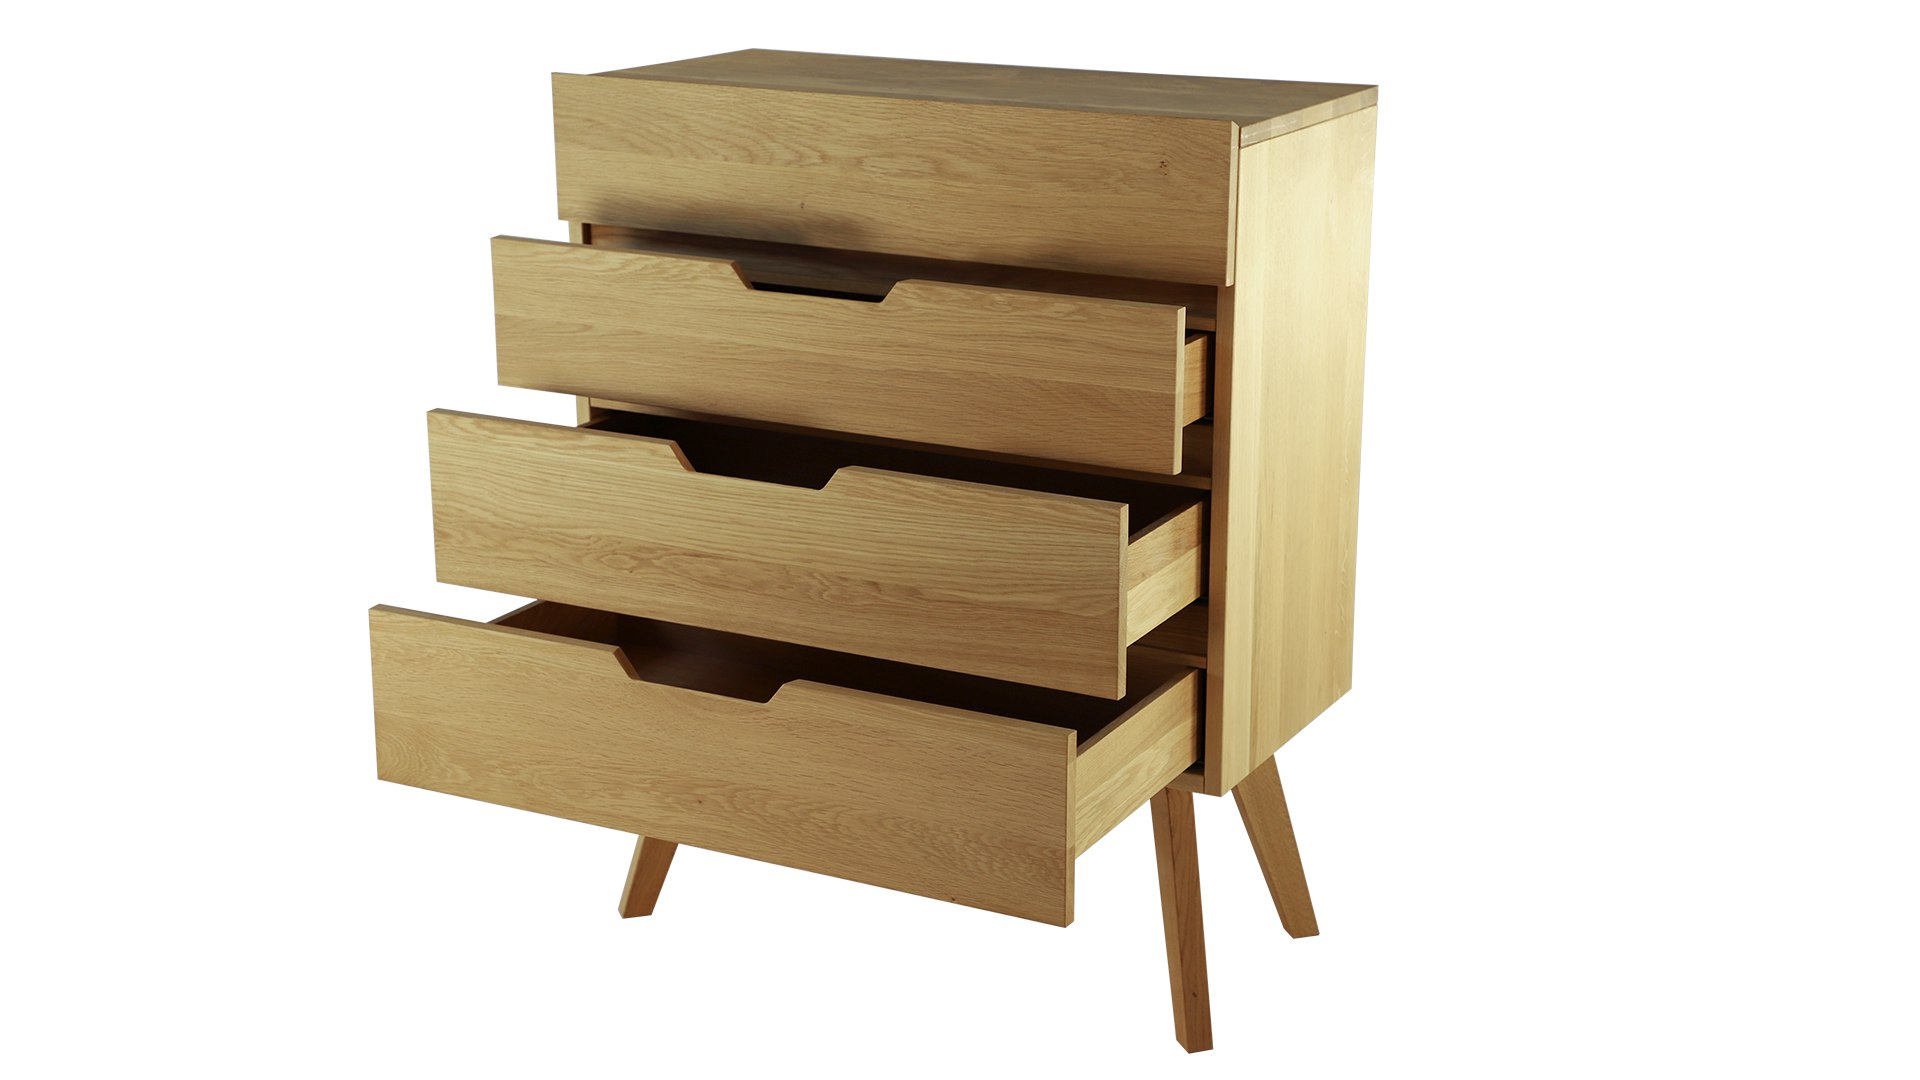 Das Kommode Dweller im Skandinavisch Design verfügt über vier Schubladen. Gefertigt wurde es aus Eichenholz. Designet wurde das Sideboard von der Marke Jan Kurtz.